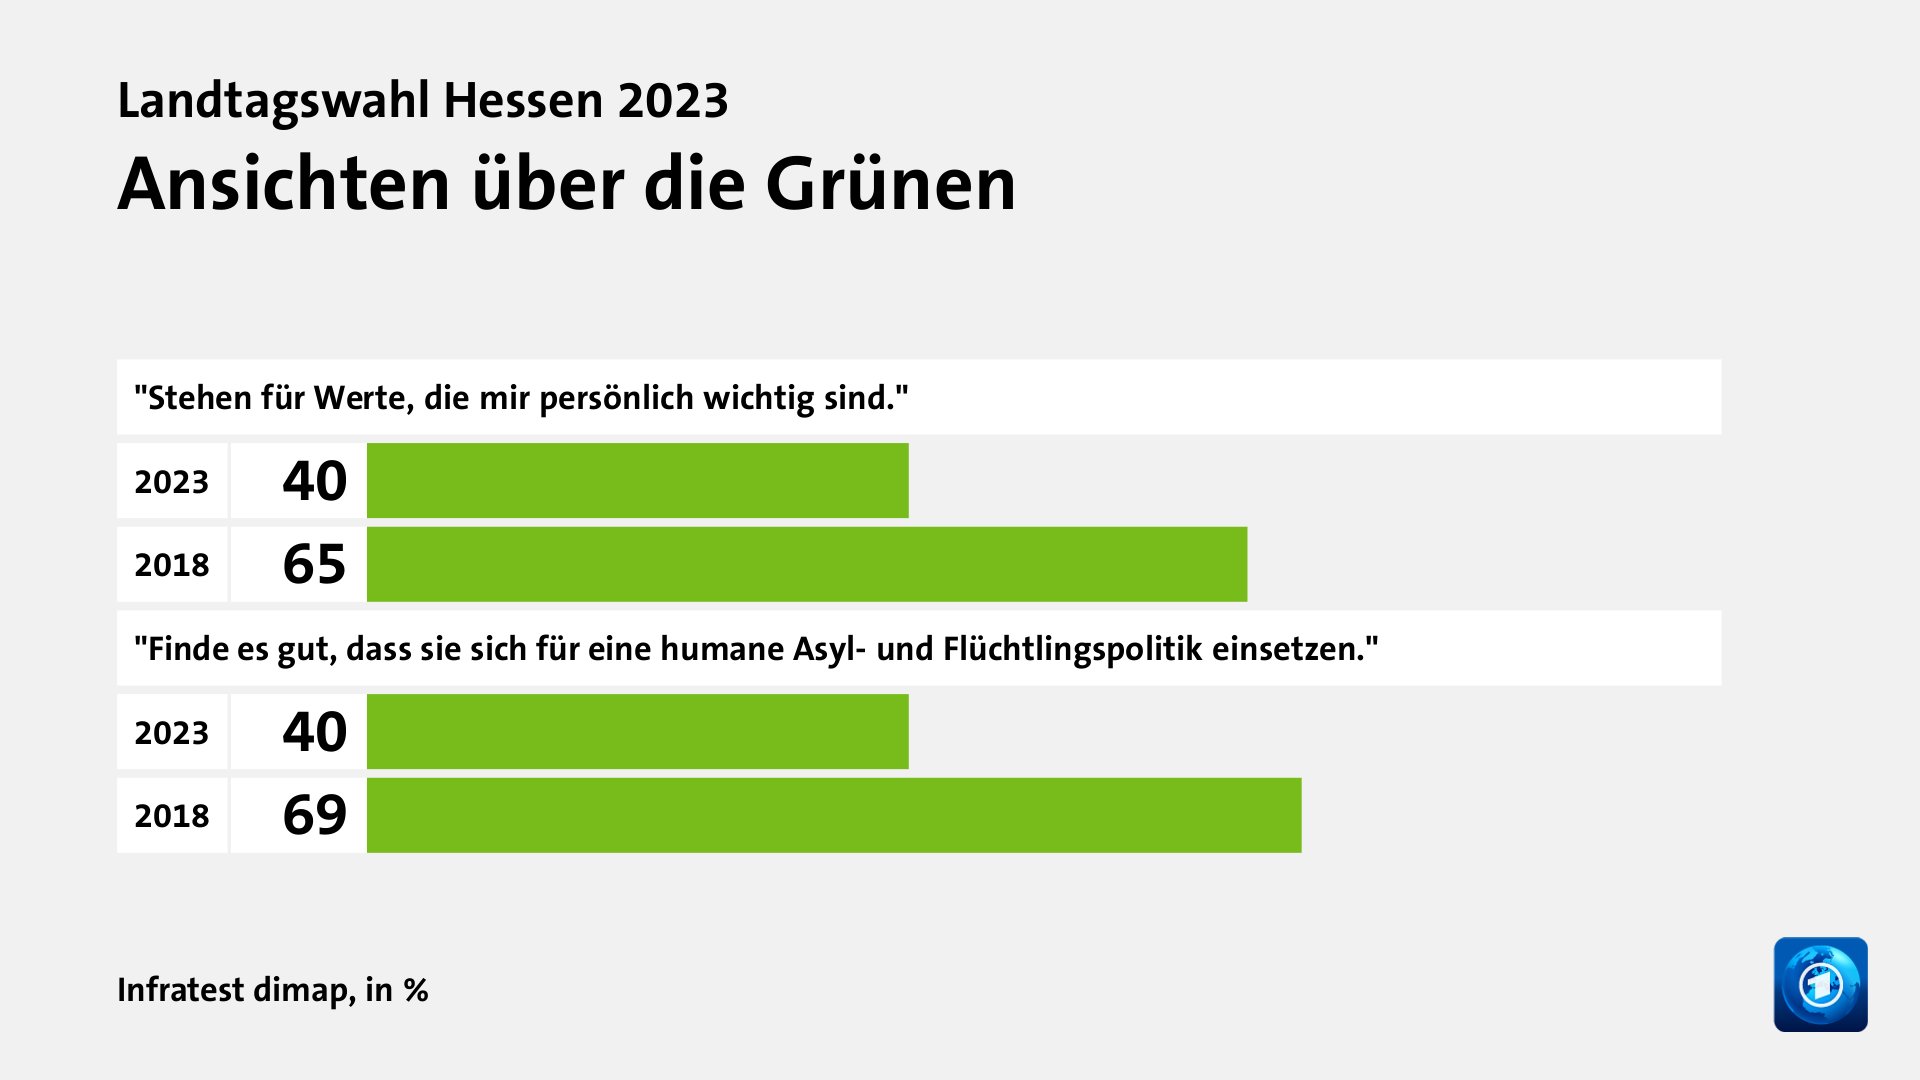 Ansichten über die Grünen, in %: 2023 40, 2018 65, 2023 40, 2018 69, Quelle: Infratest dimap